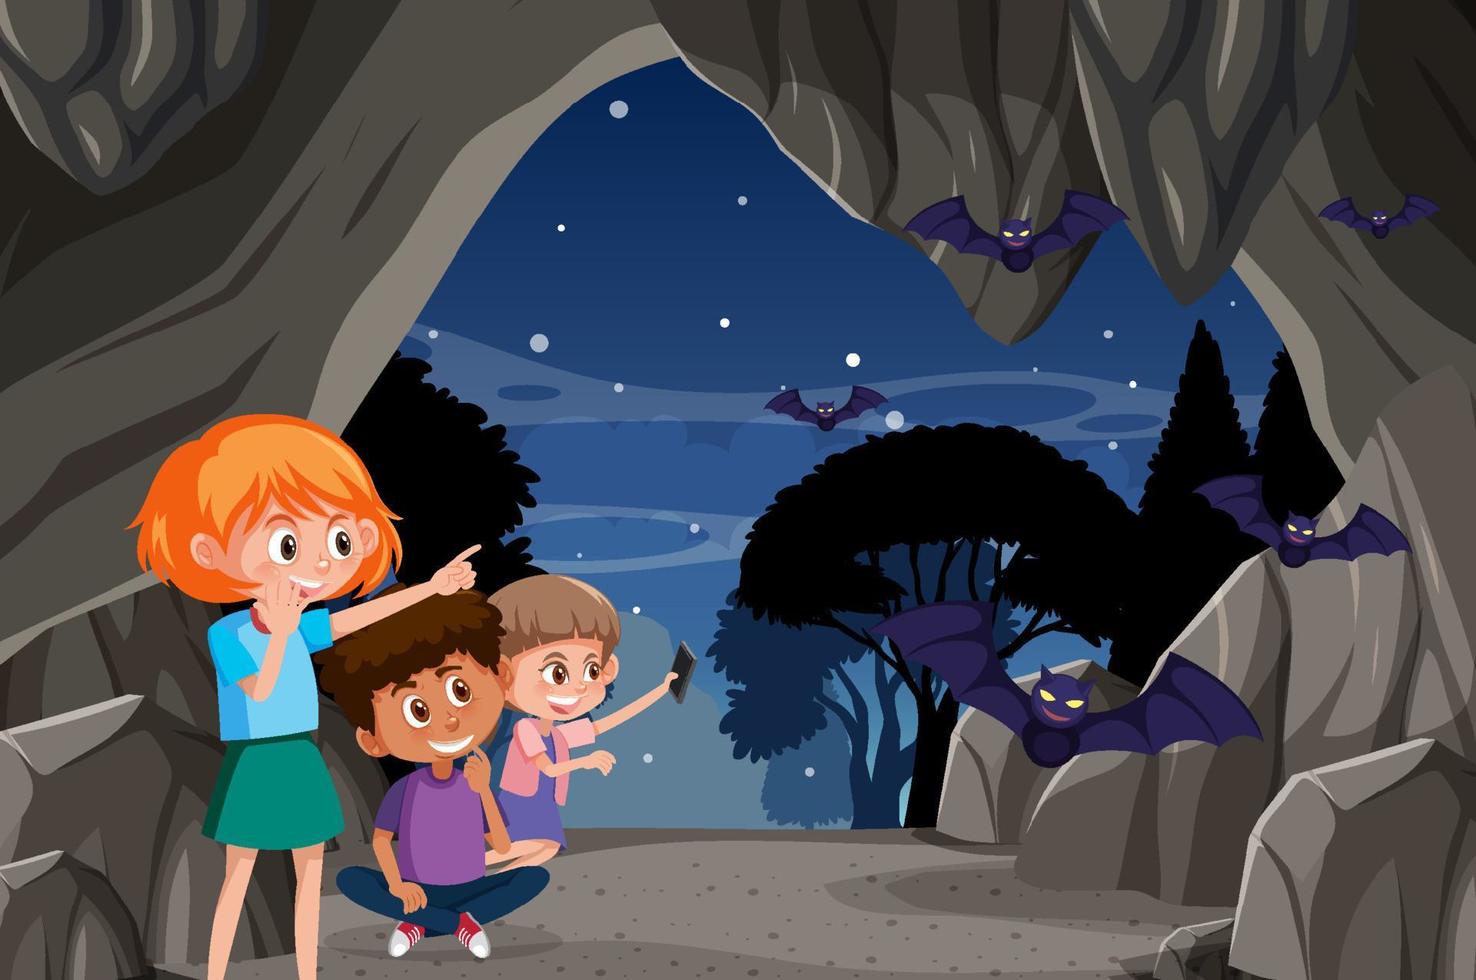 In cave scene with children exploring cartoon character vector